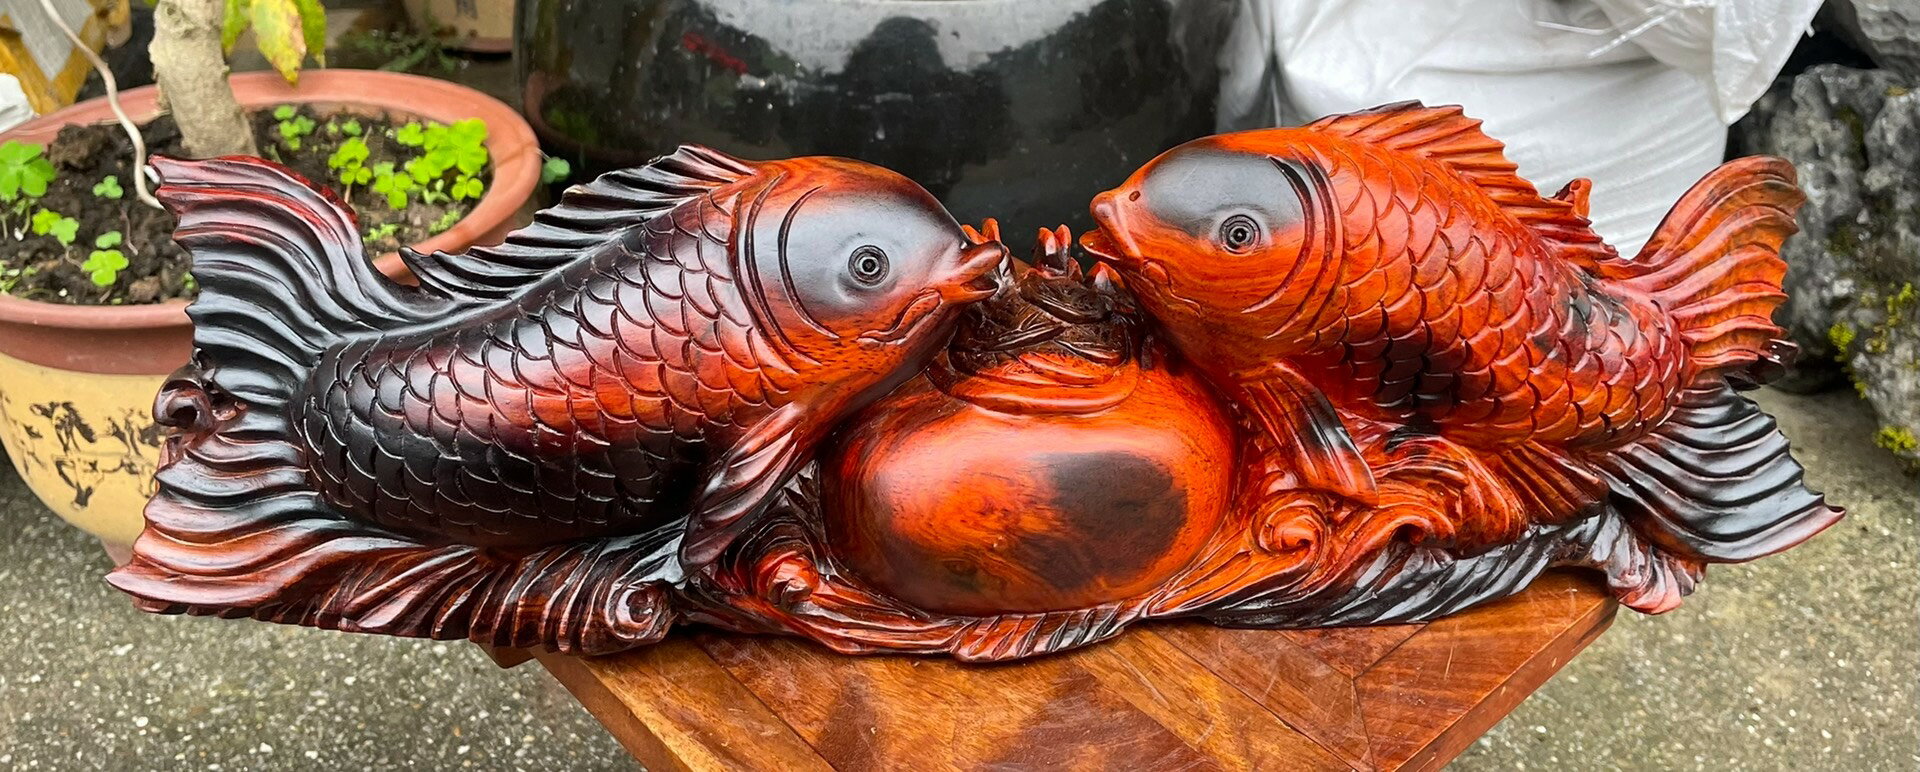 手工雕刻 大紅酸枝紅木鯉魚擺飾 酸枝木鯉魚聚寶盆